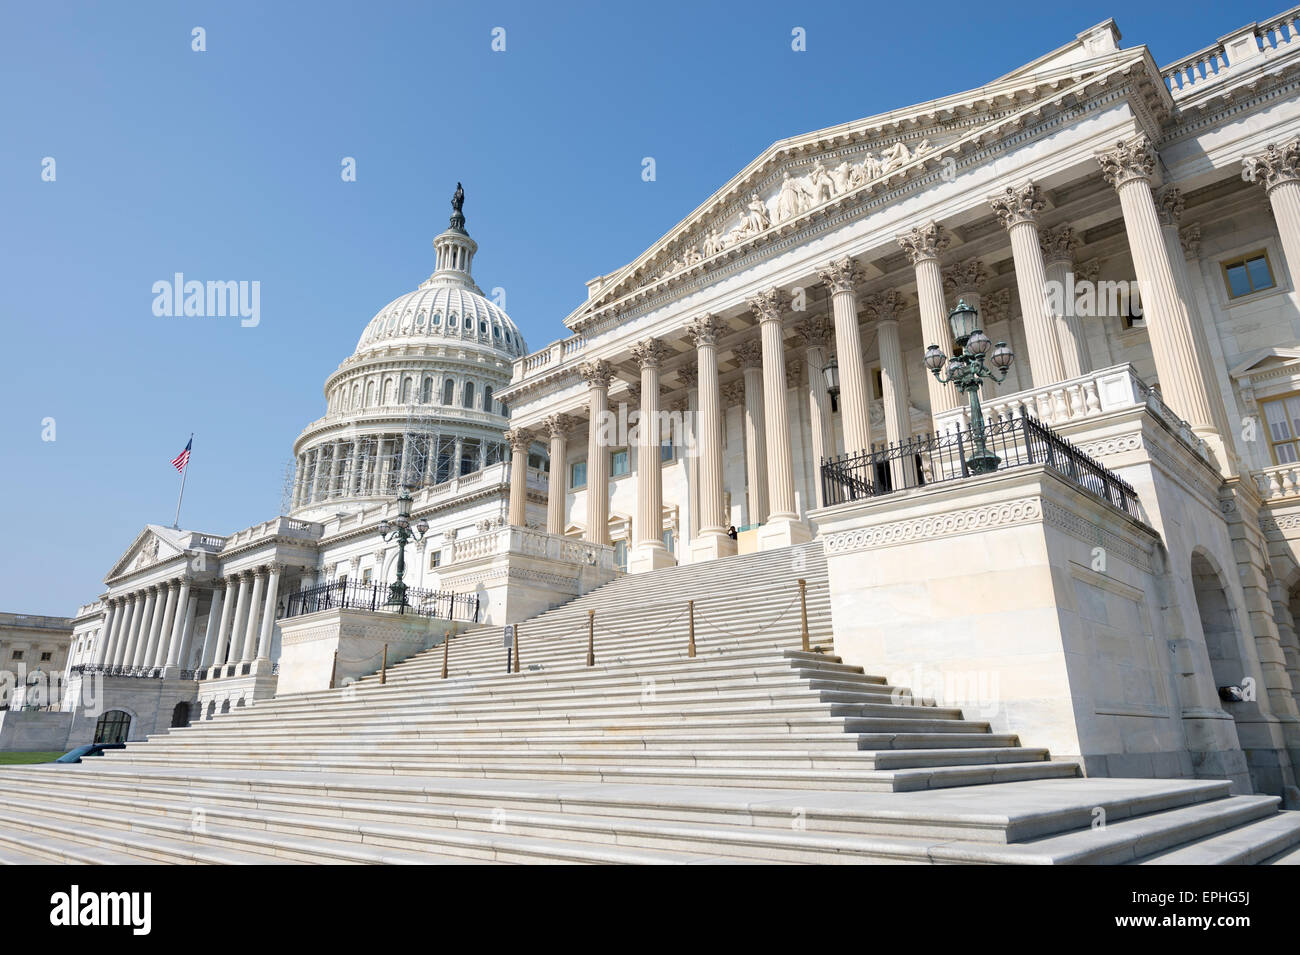 United States Capitol Building Washington DC USA vista panoramica con scala d'ingresso sotto il cielo blu chiaro Foto Stock